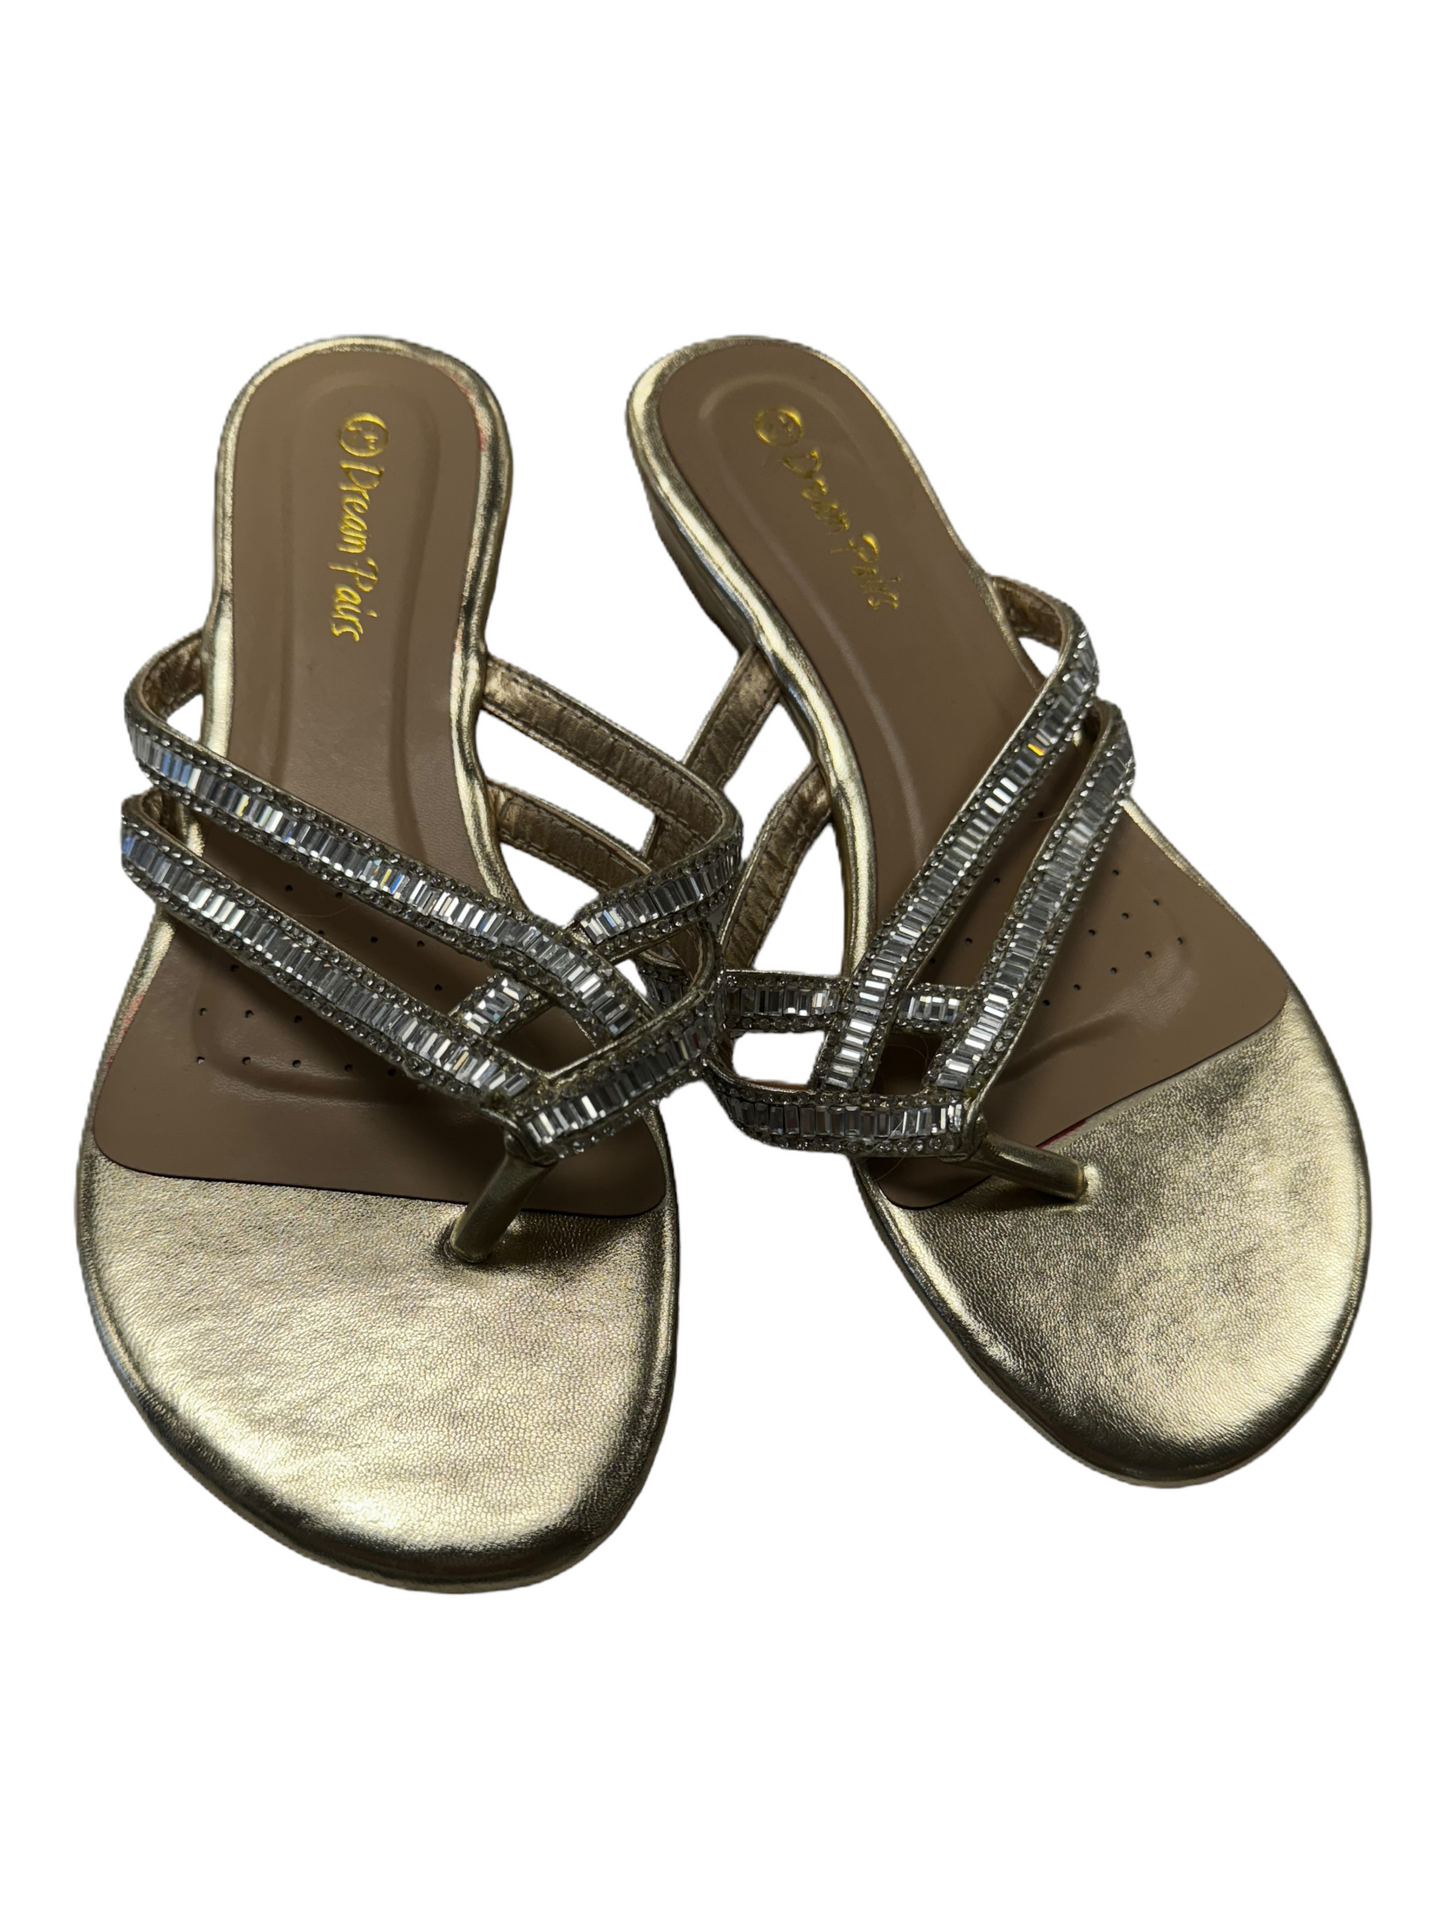 Sandals Flip Flops By DREAM PARIS  Size: 7.5